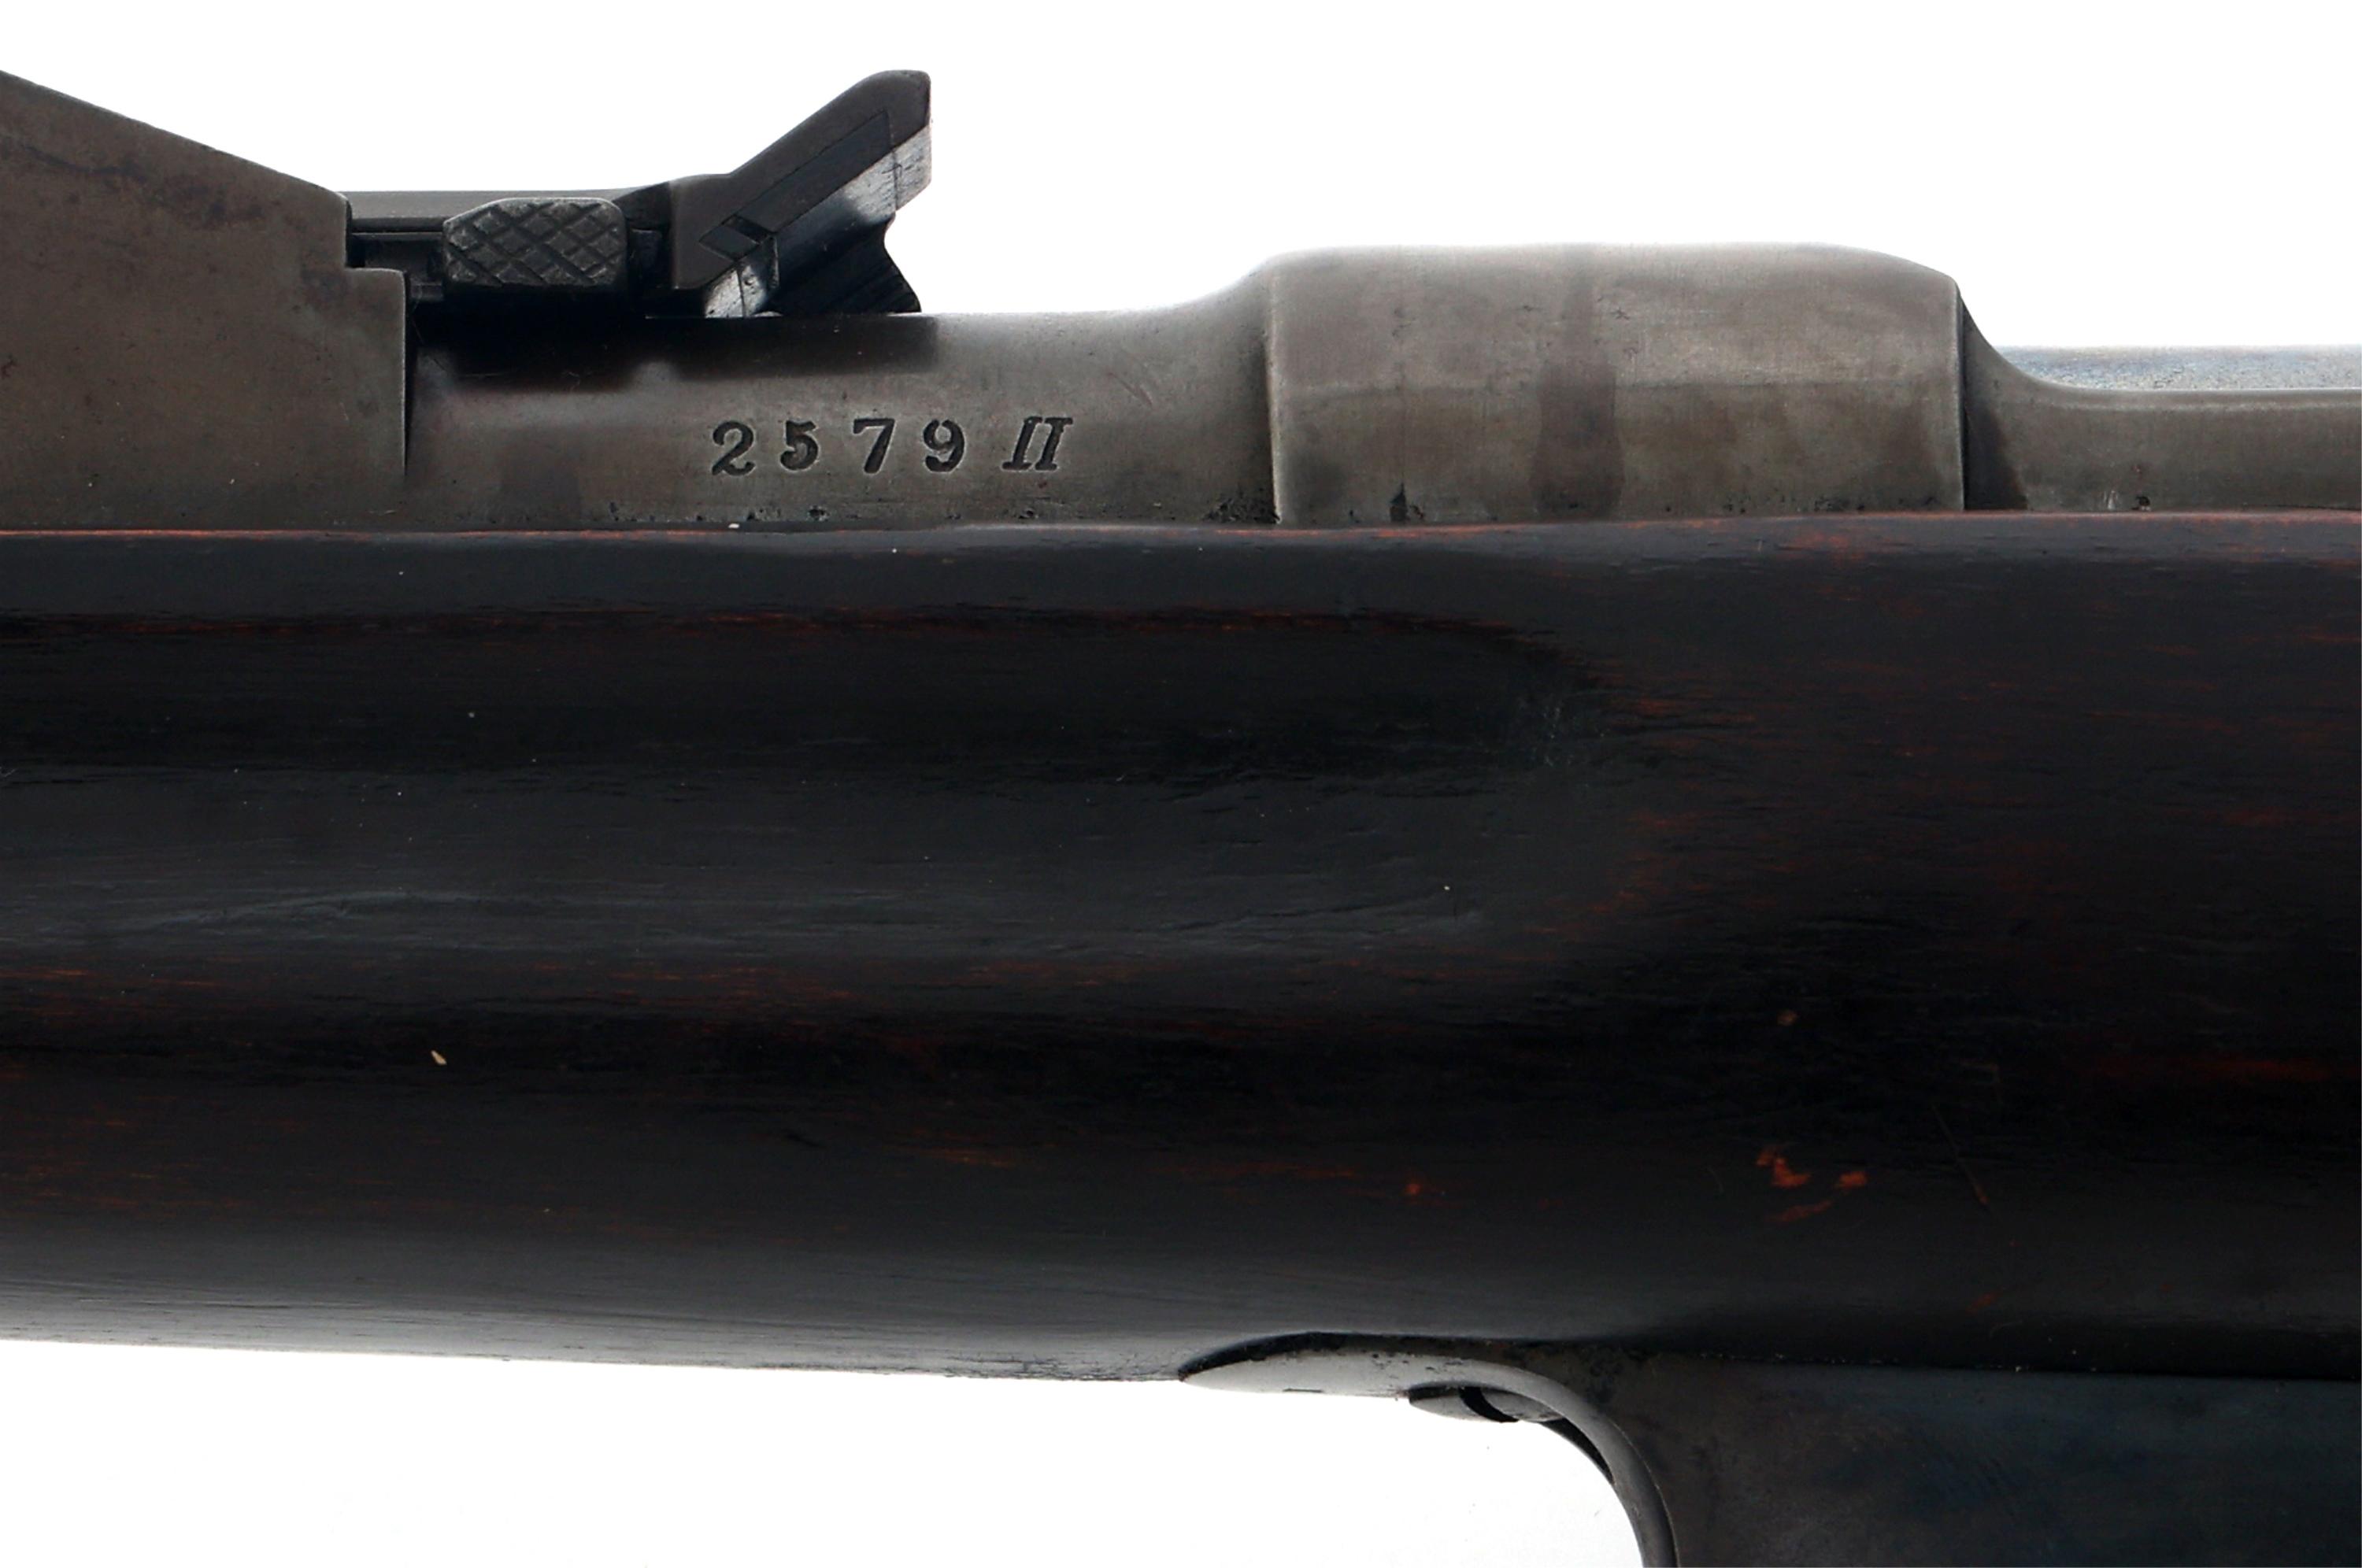 SPORTERIZED STEYR MODEL 1886 11mm MANNLICHER RIFLE